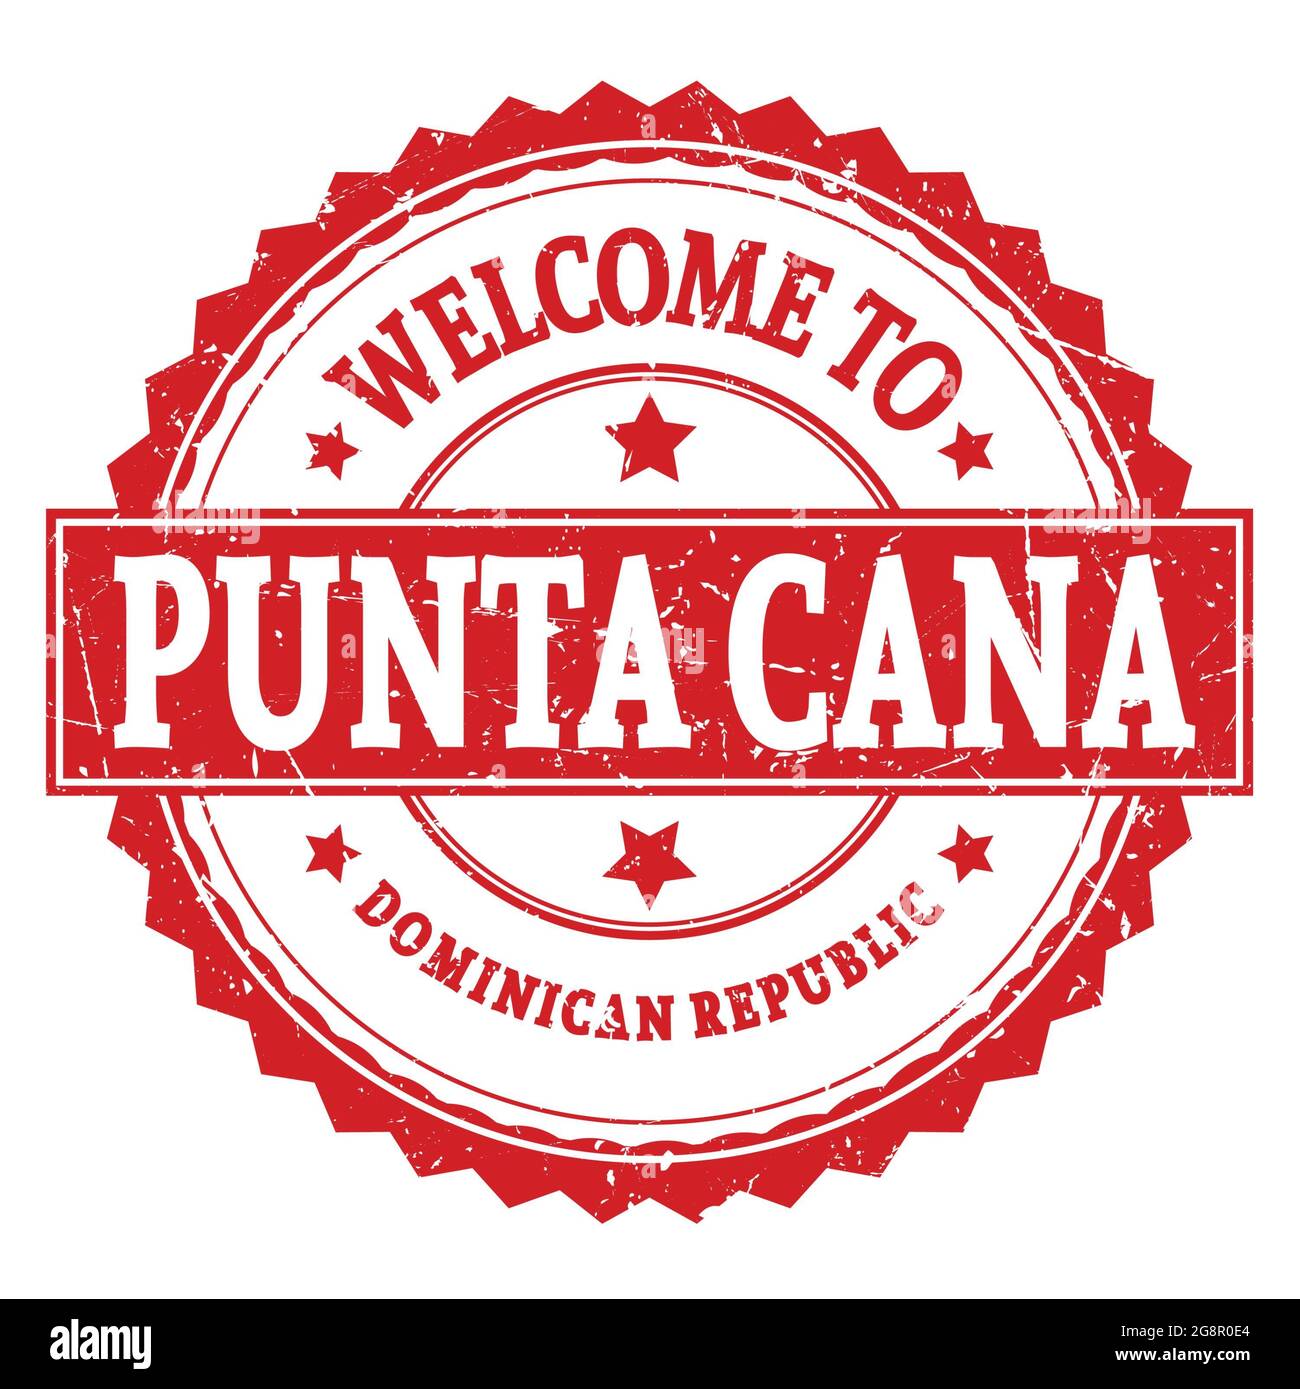 BIENVENUE À PUNTA CANA - RÉPUBLIQUE DOMINICAINE, mots écrits sur le timbre rond rouge en zigzag Banque D'Images